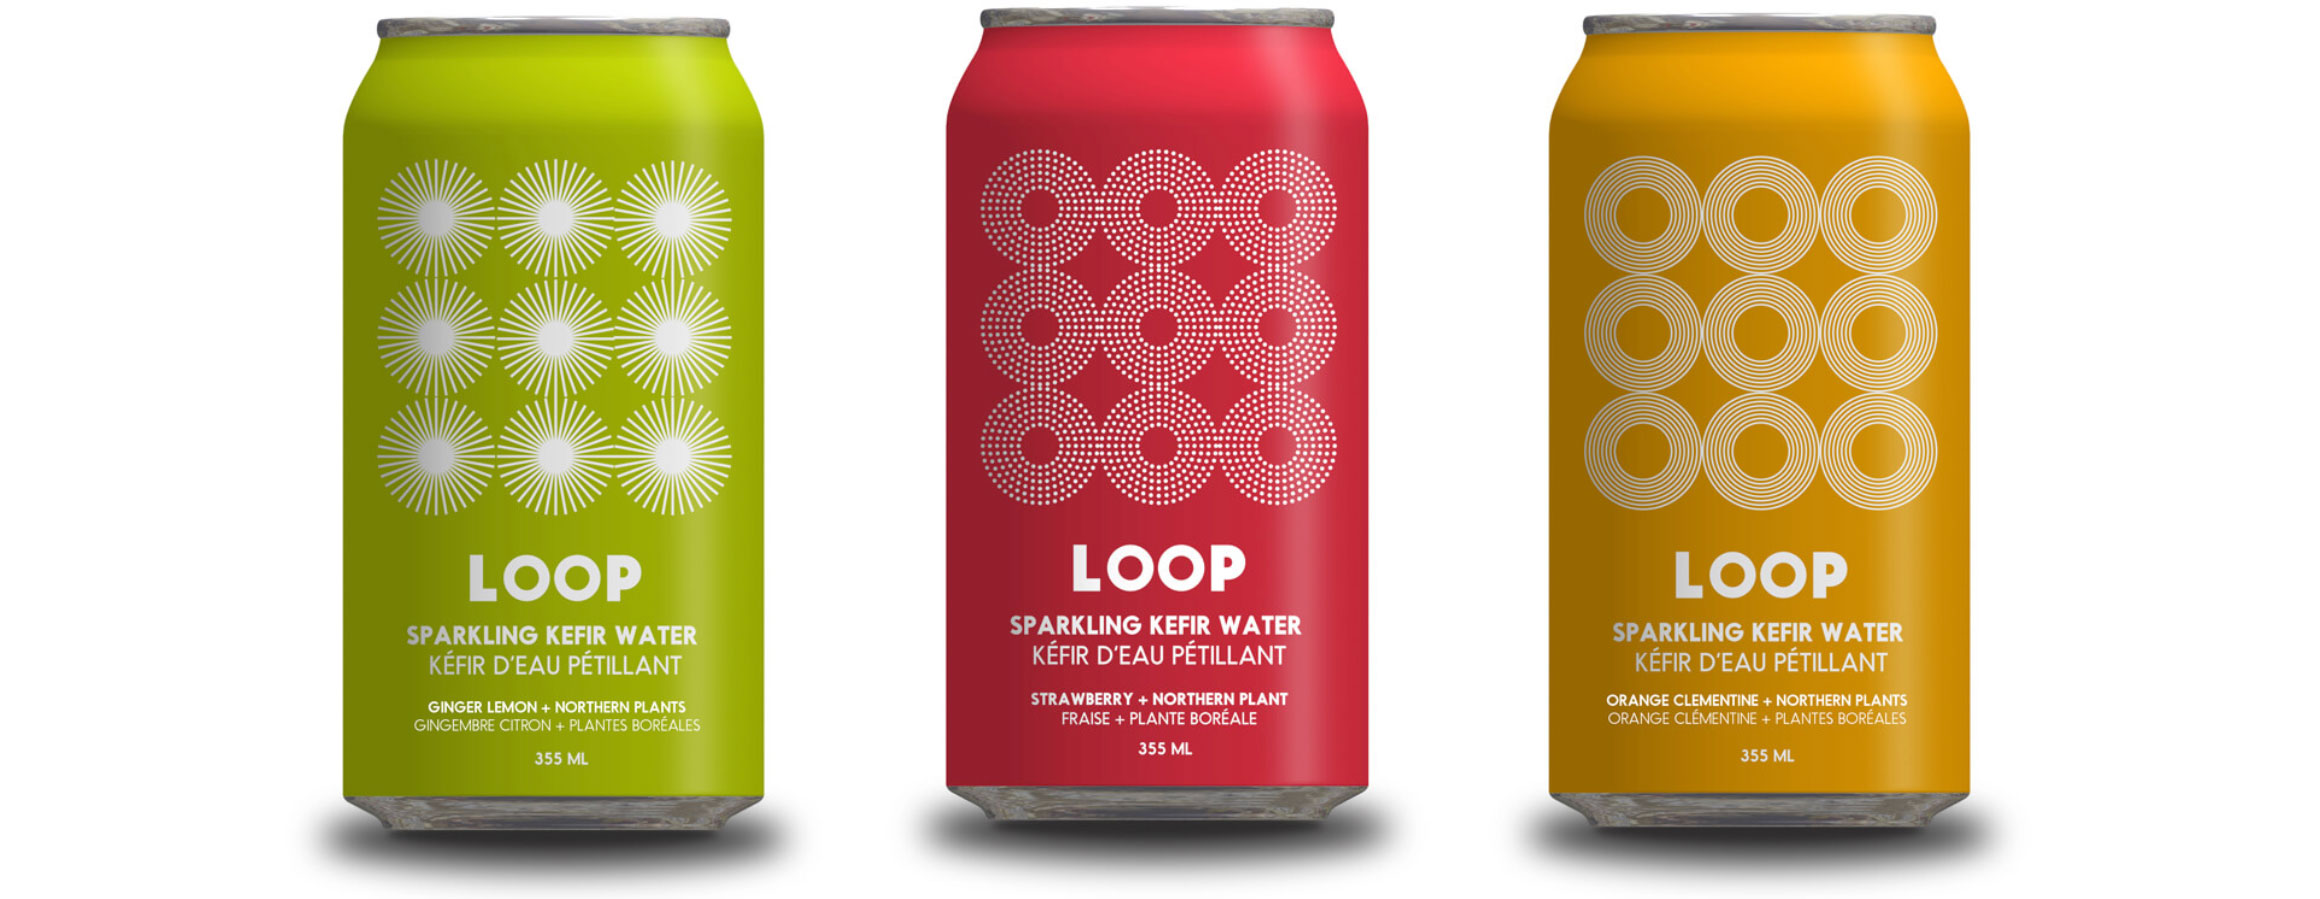 loop sparkling kefir water - food and beverage brands